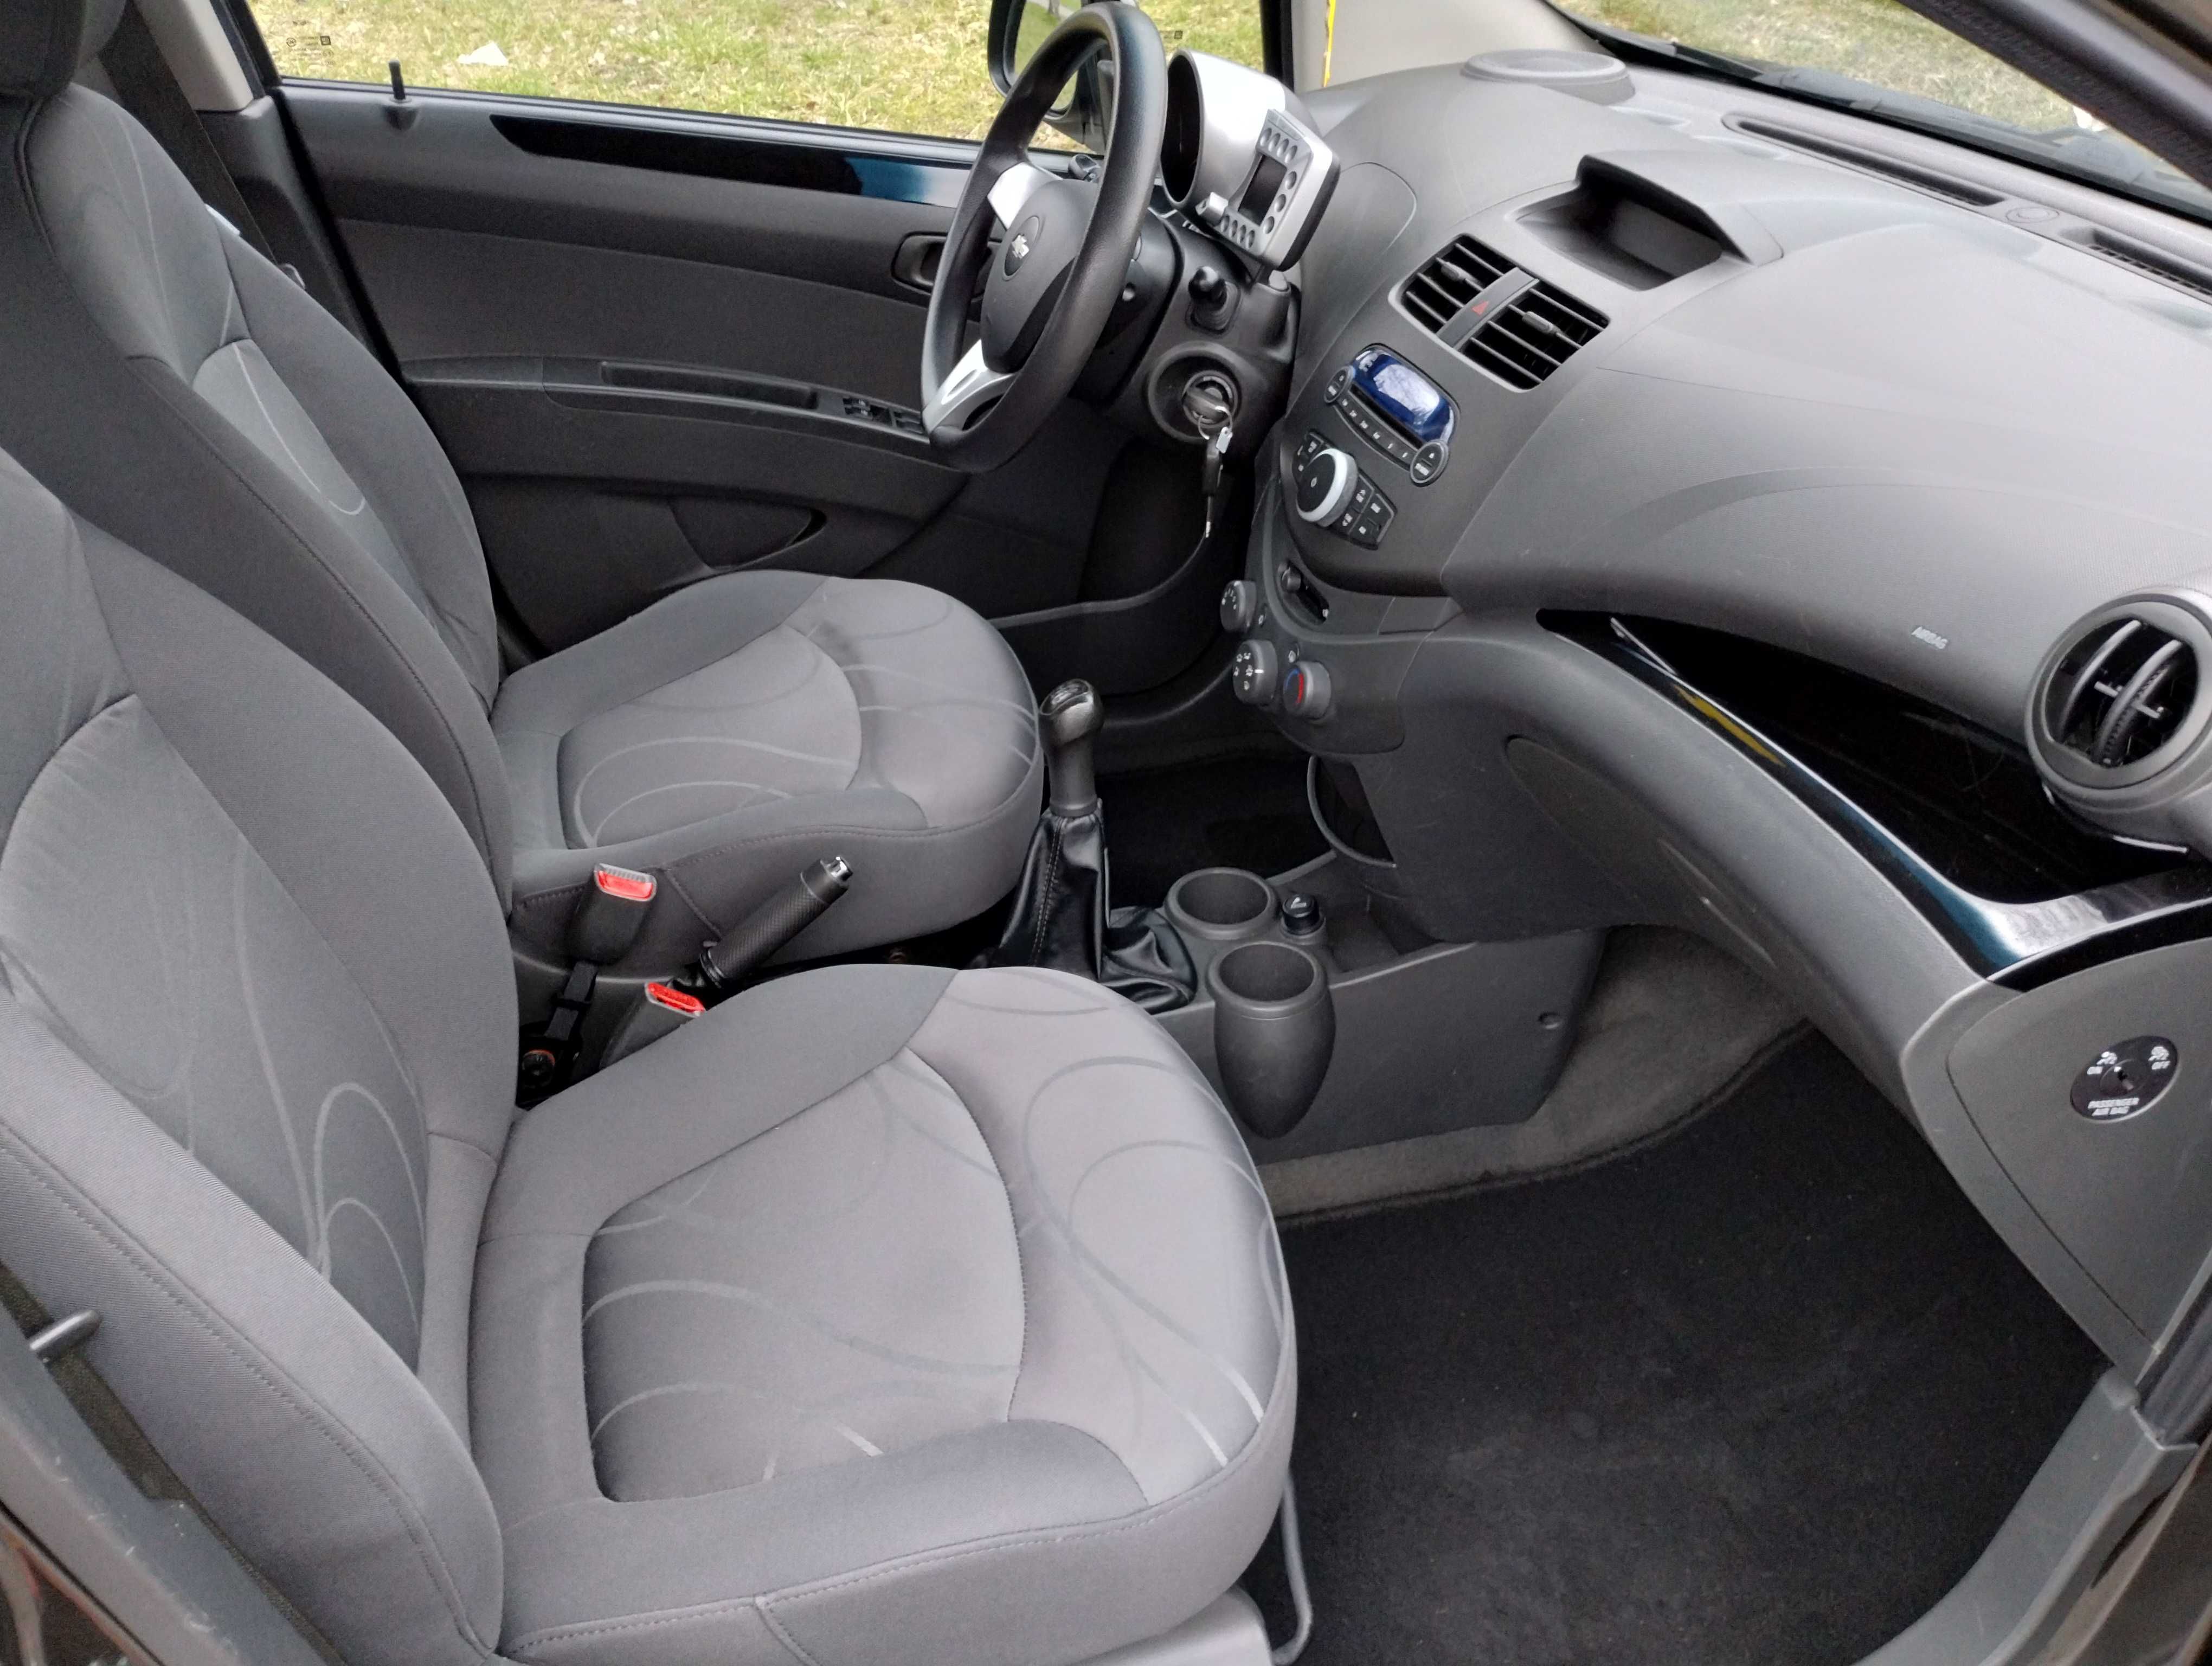 Chevrolet Spark 2010r 1.2 benzyna, klima, lak.oryginał, ks serwisowa